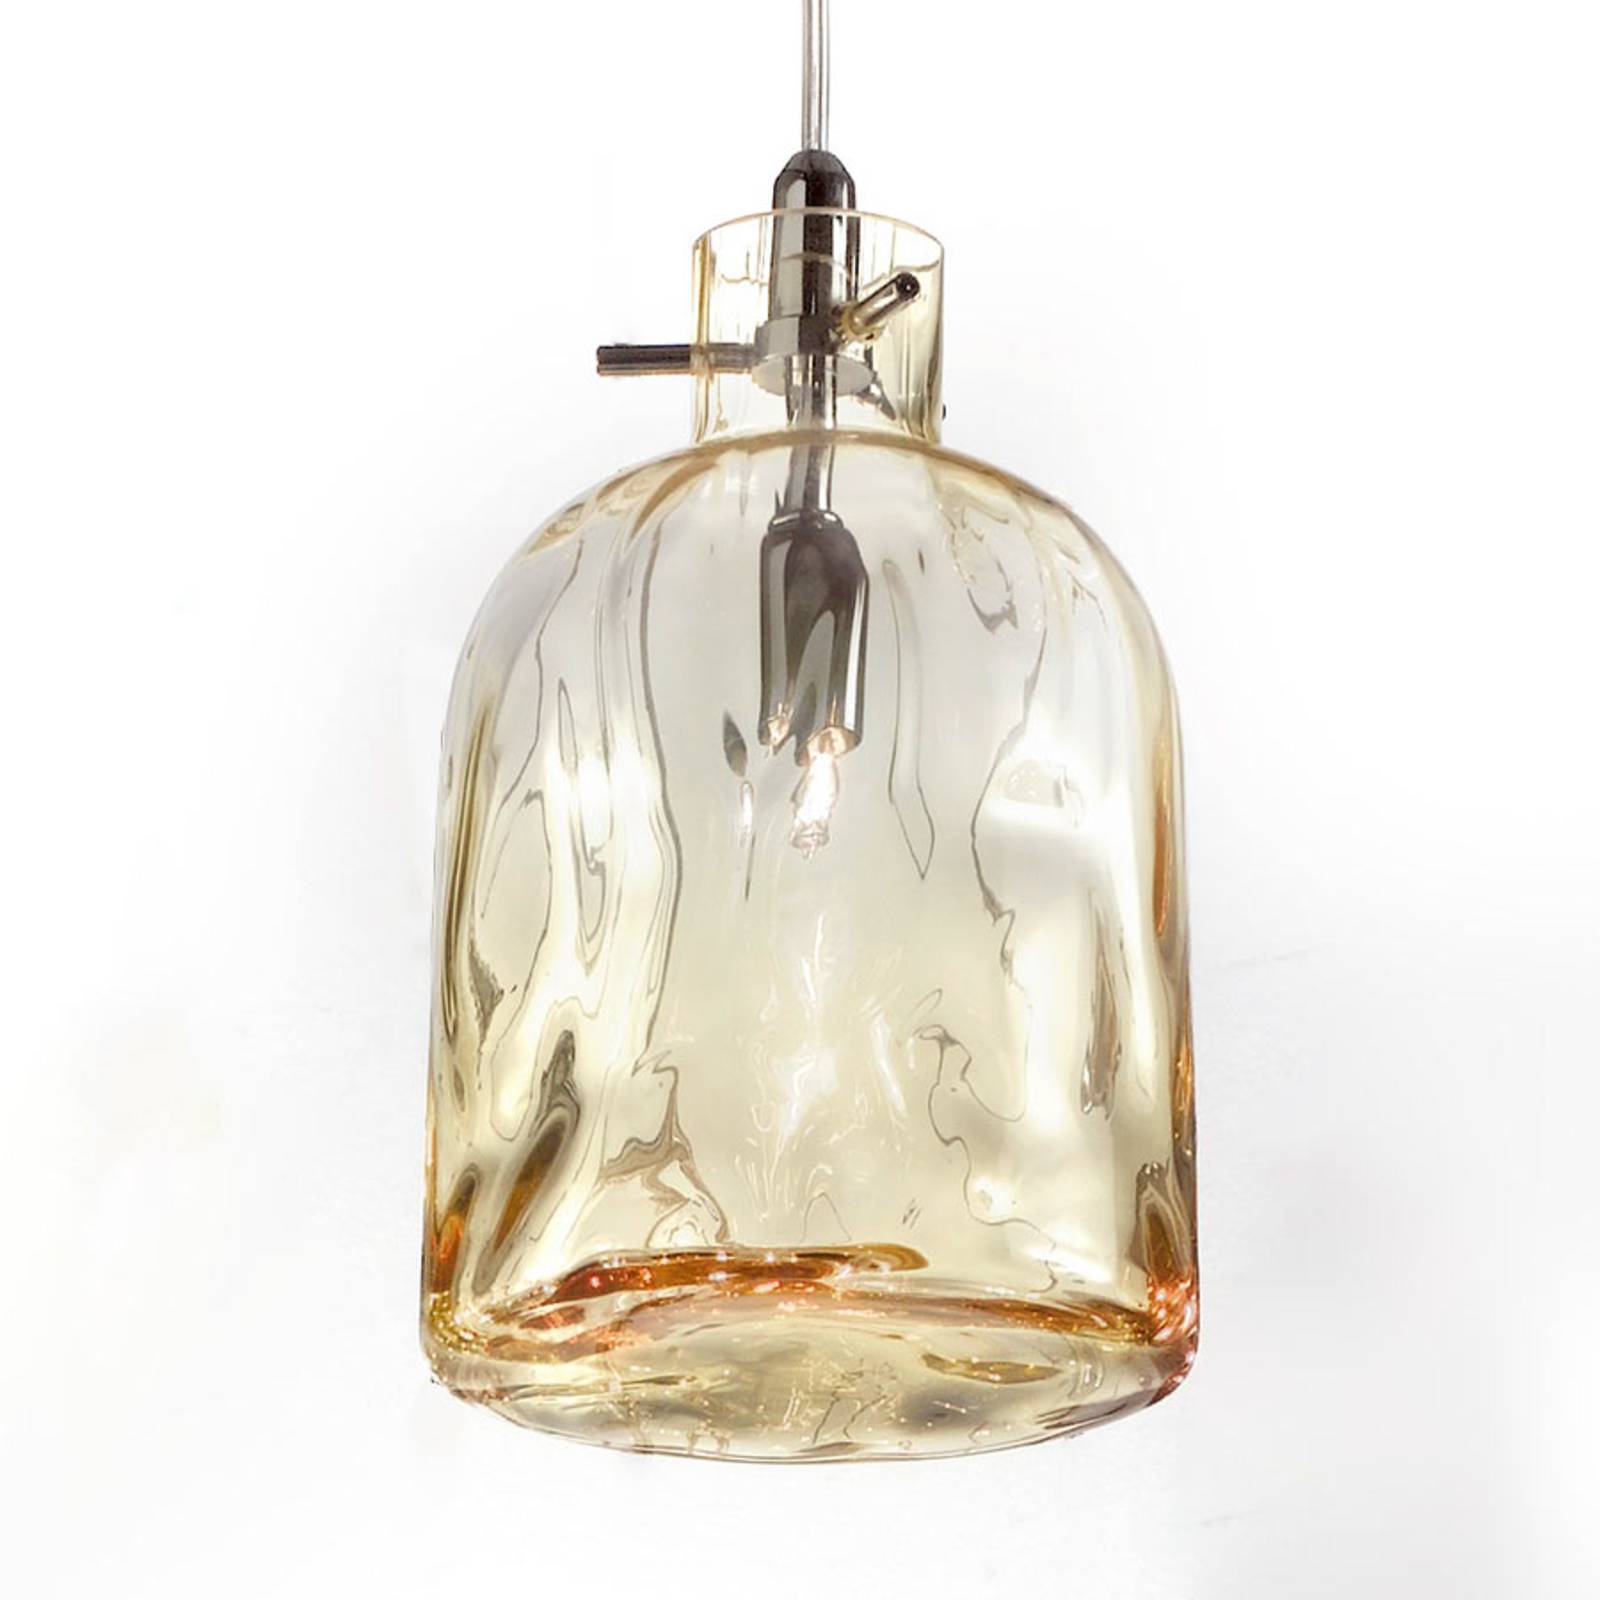 Designer-hanglamp Bossa Nova 15 cm amber